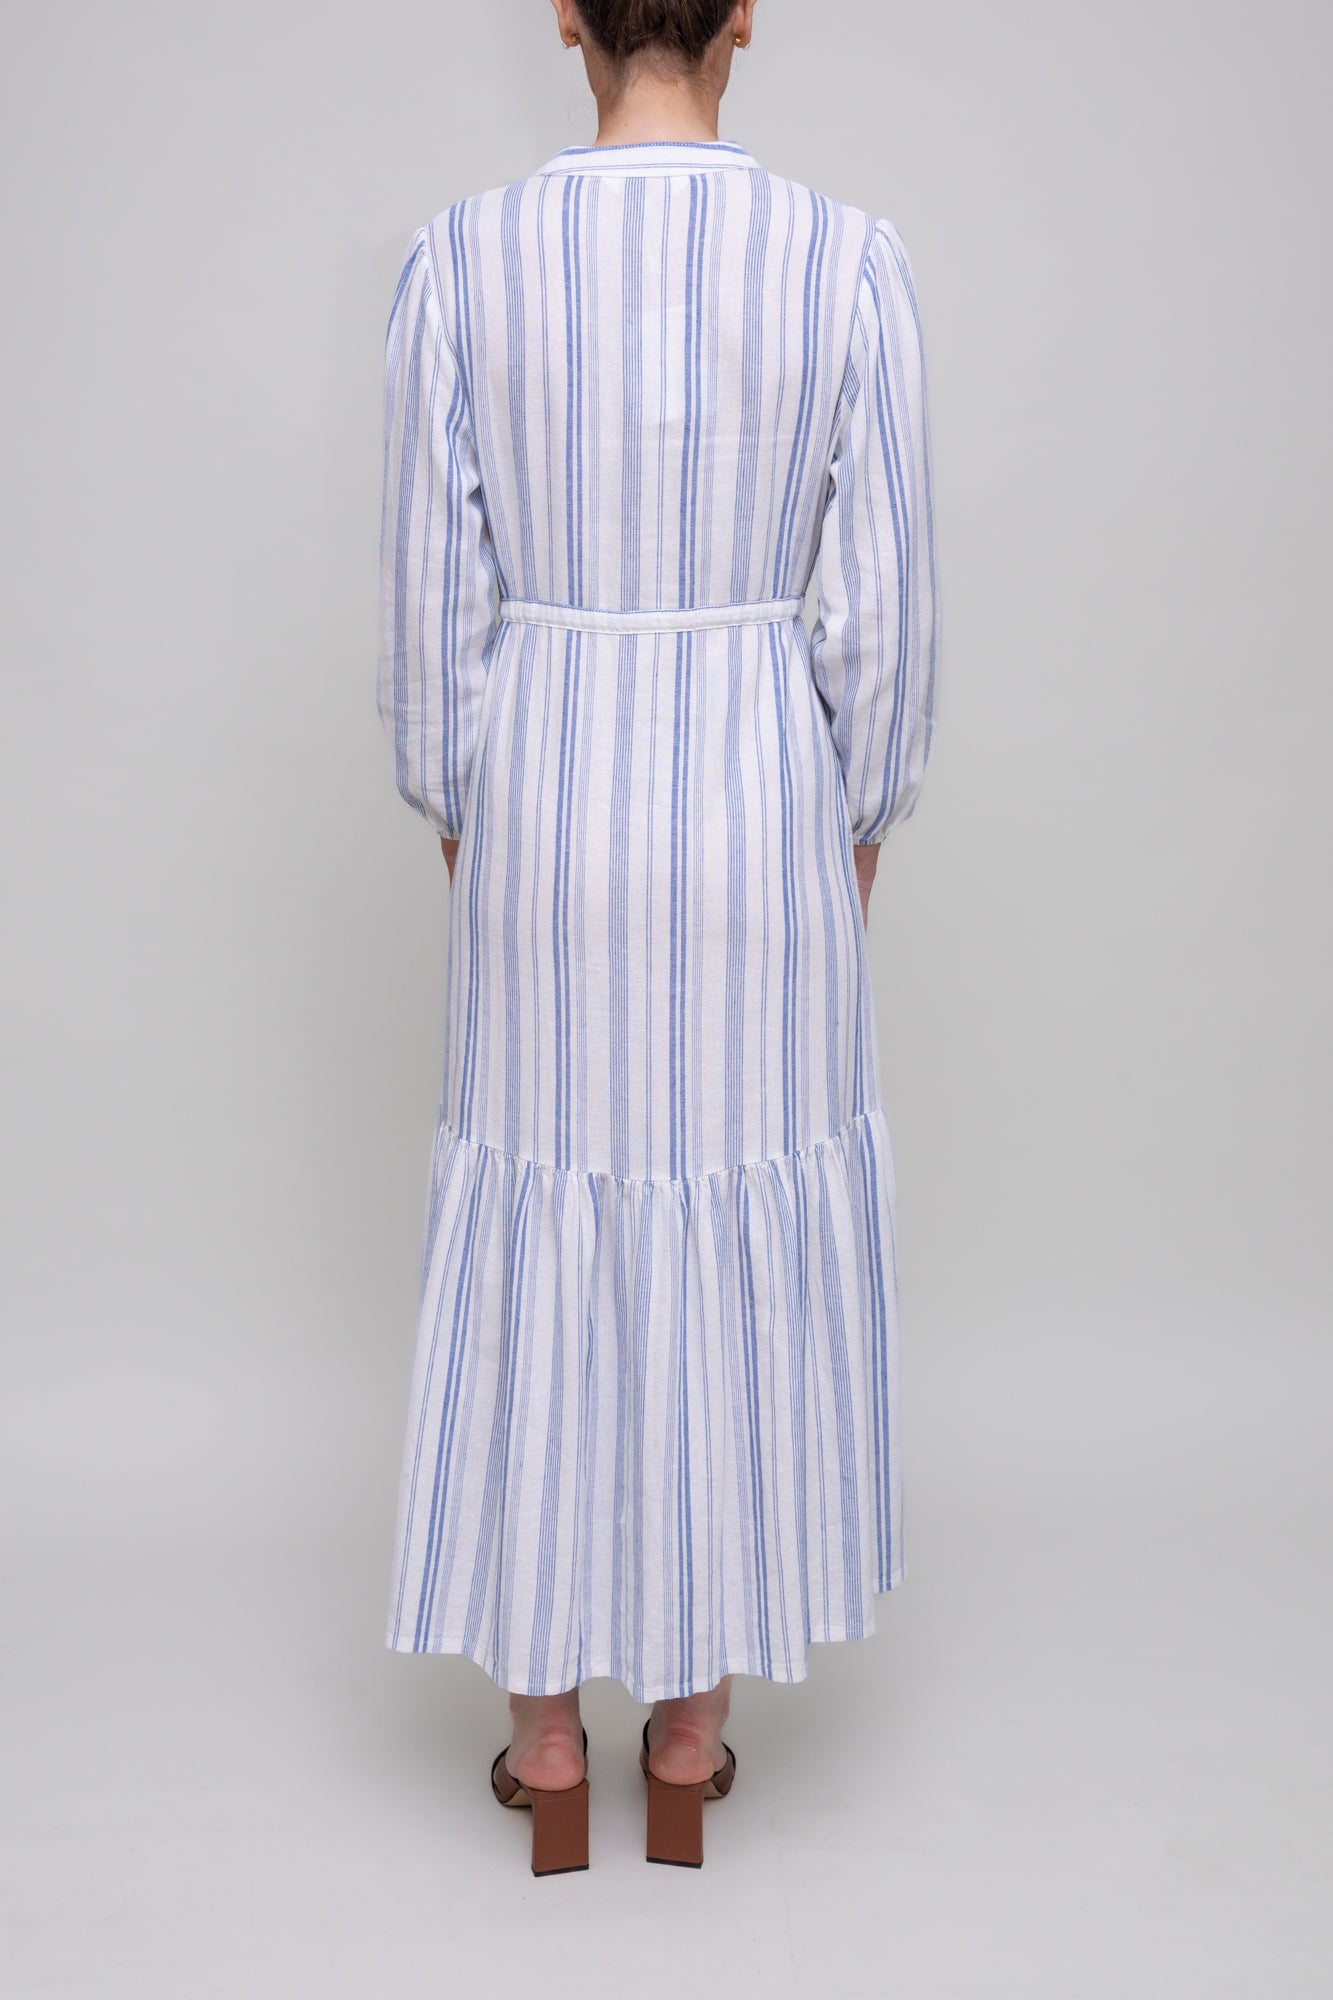 Striped linen summer dress